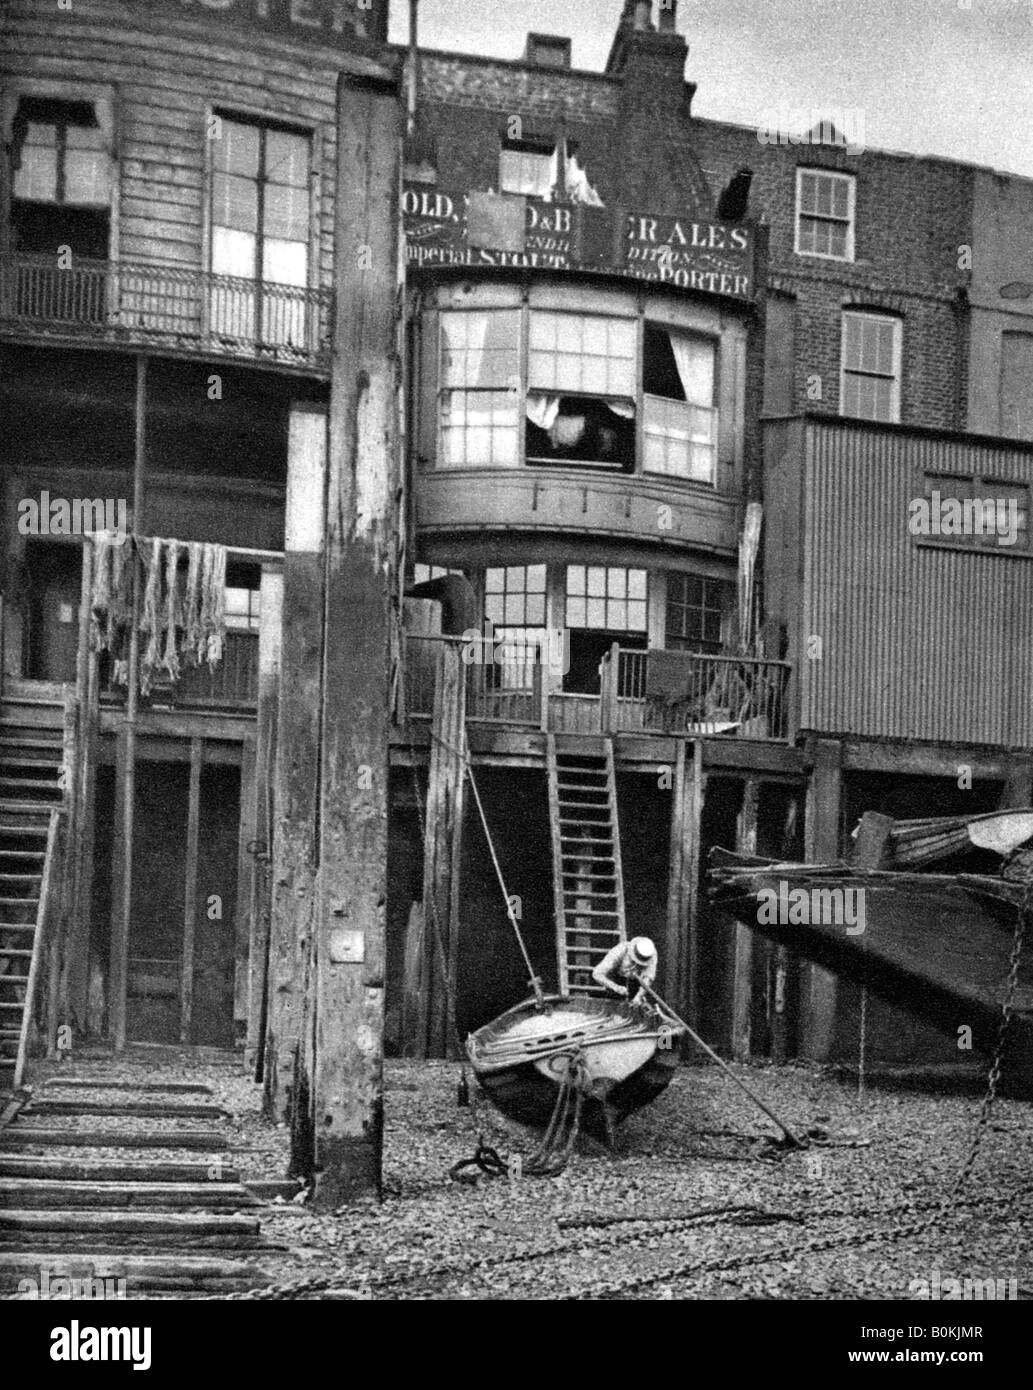 Vieille pub sur la Tamise, Londres, 1926-1927. Artiste : Inconnu Banque D'Images